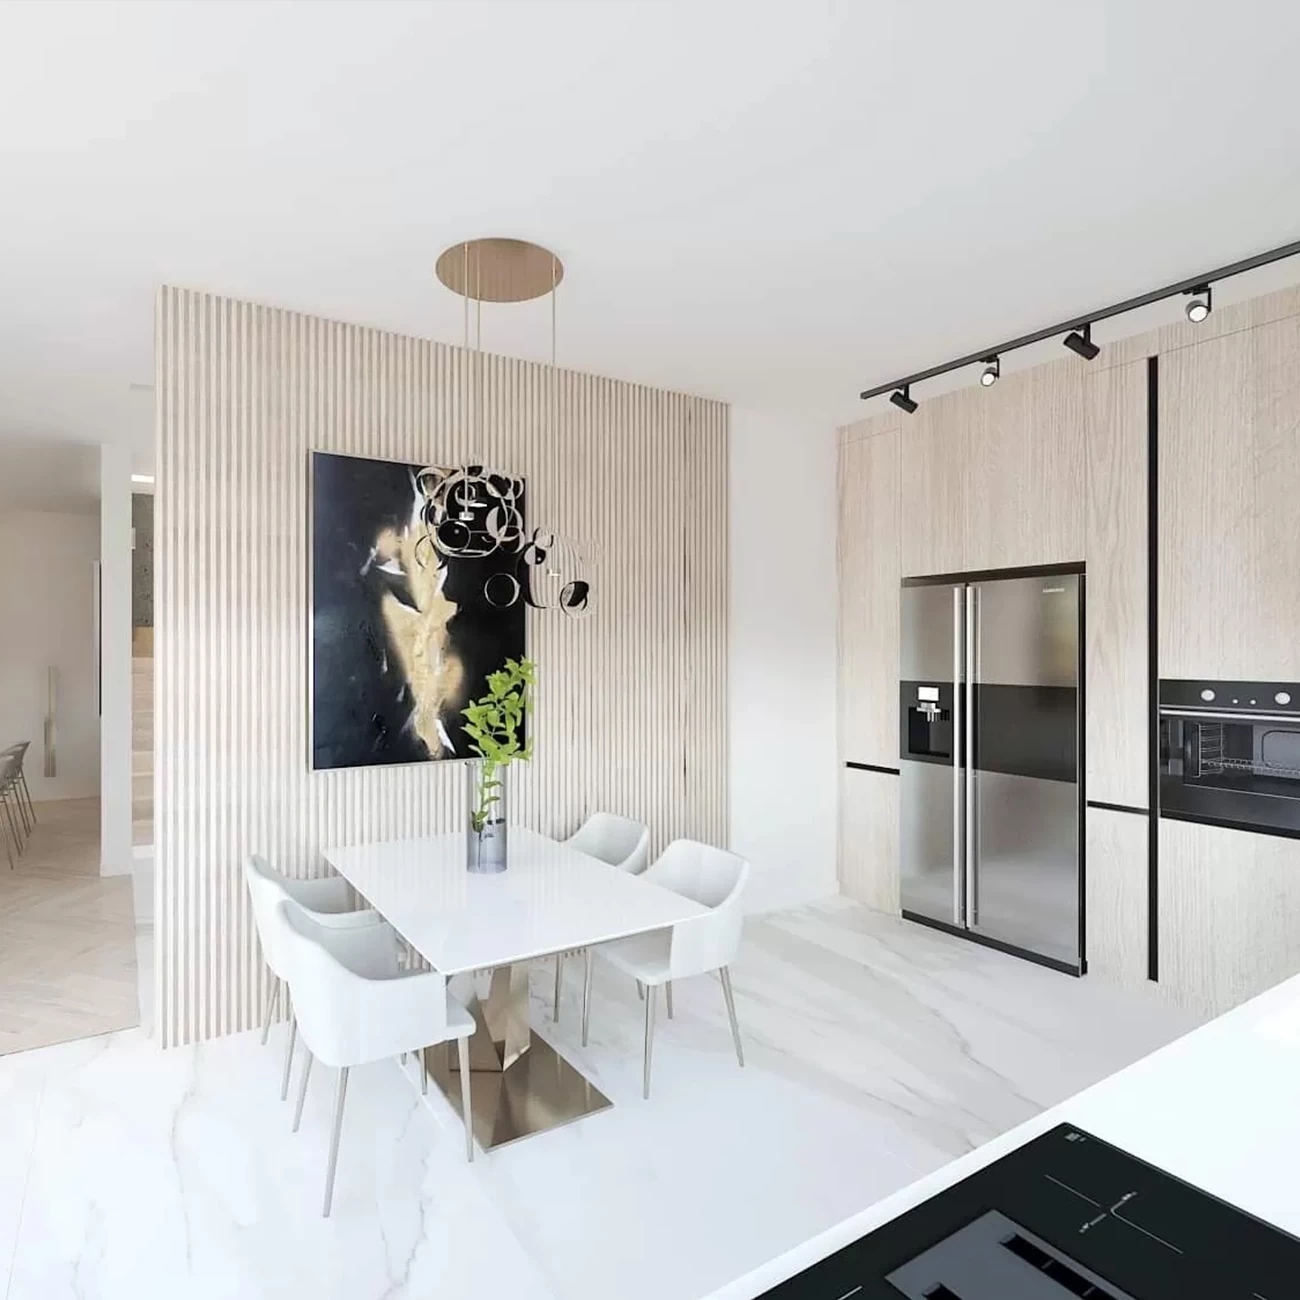 Lux modern kitchen